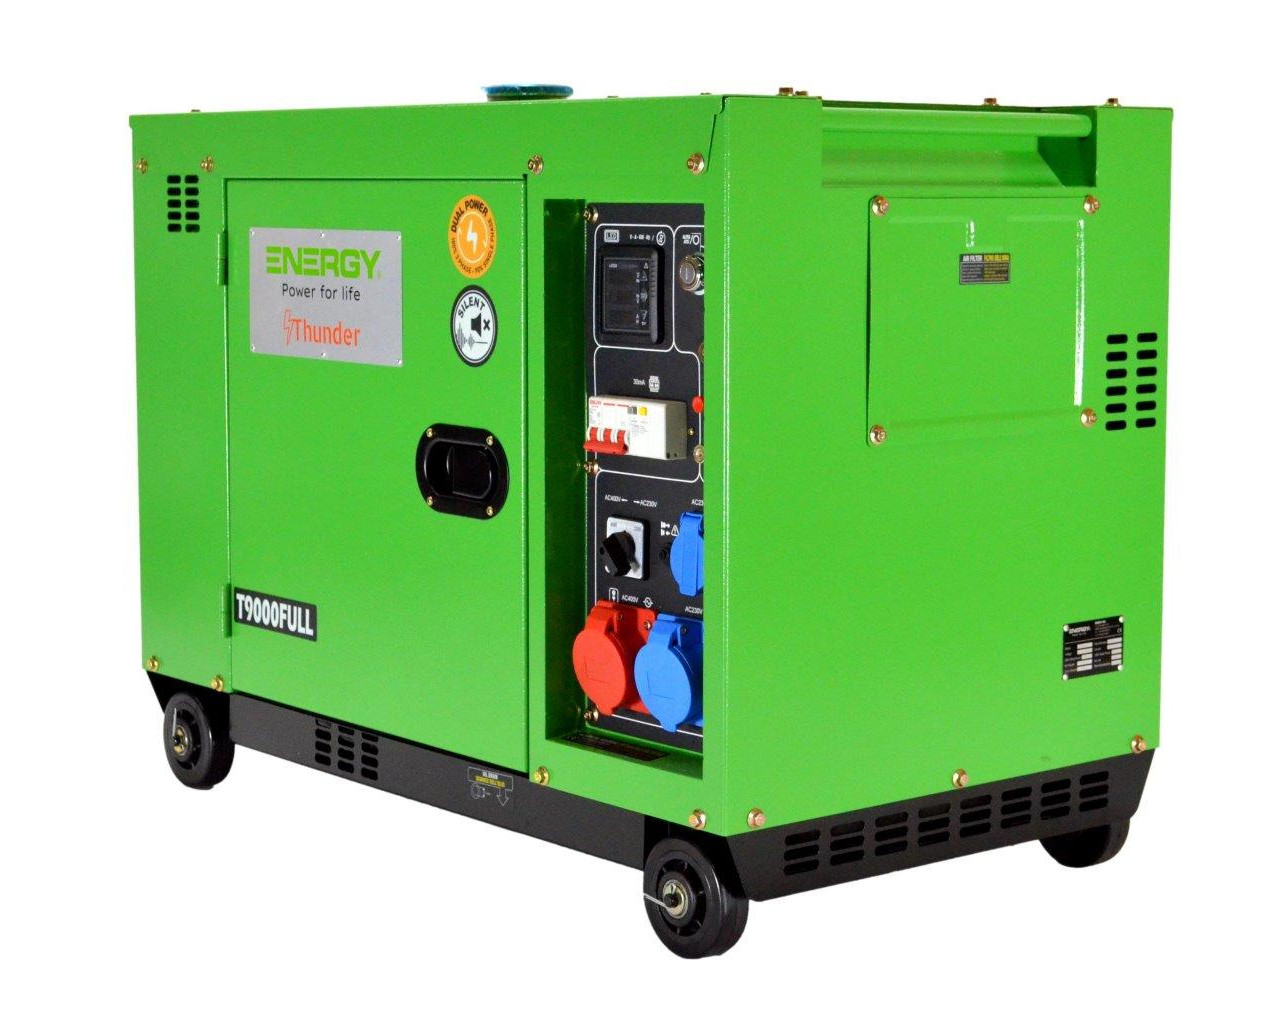 Stromaggregat Energy Thunder T9000FULL 3000 U/min mit Elektrostart und Schallverhaubung